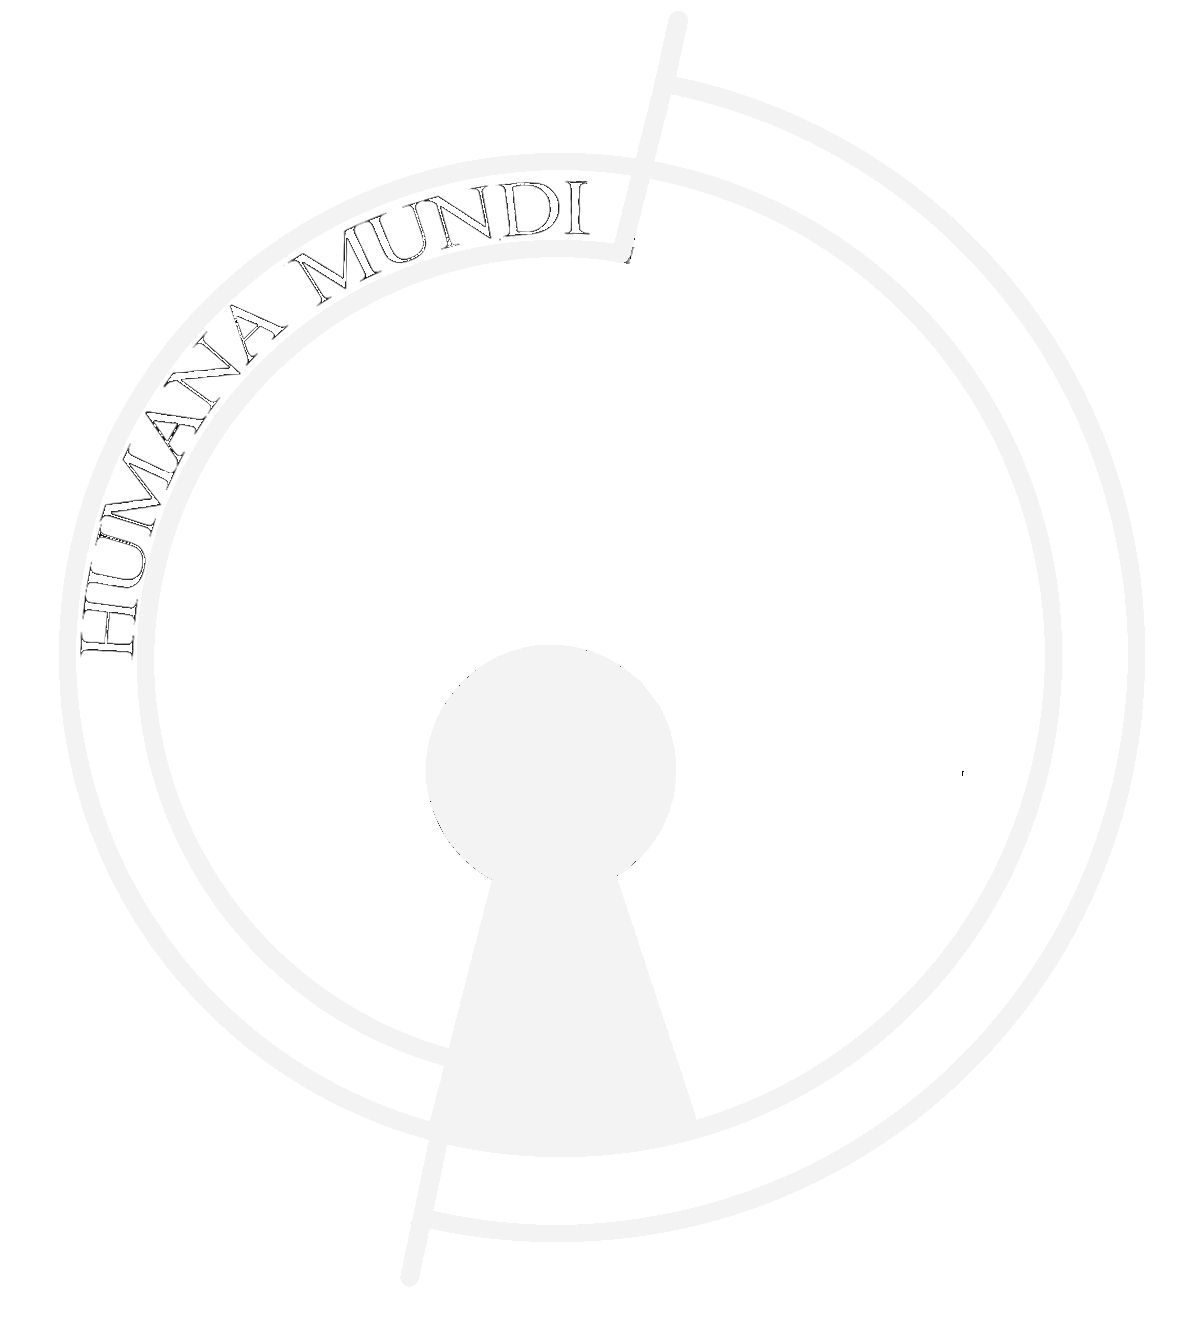 Fundacja Humana Mundi